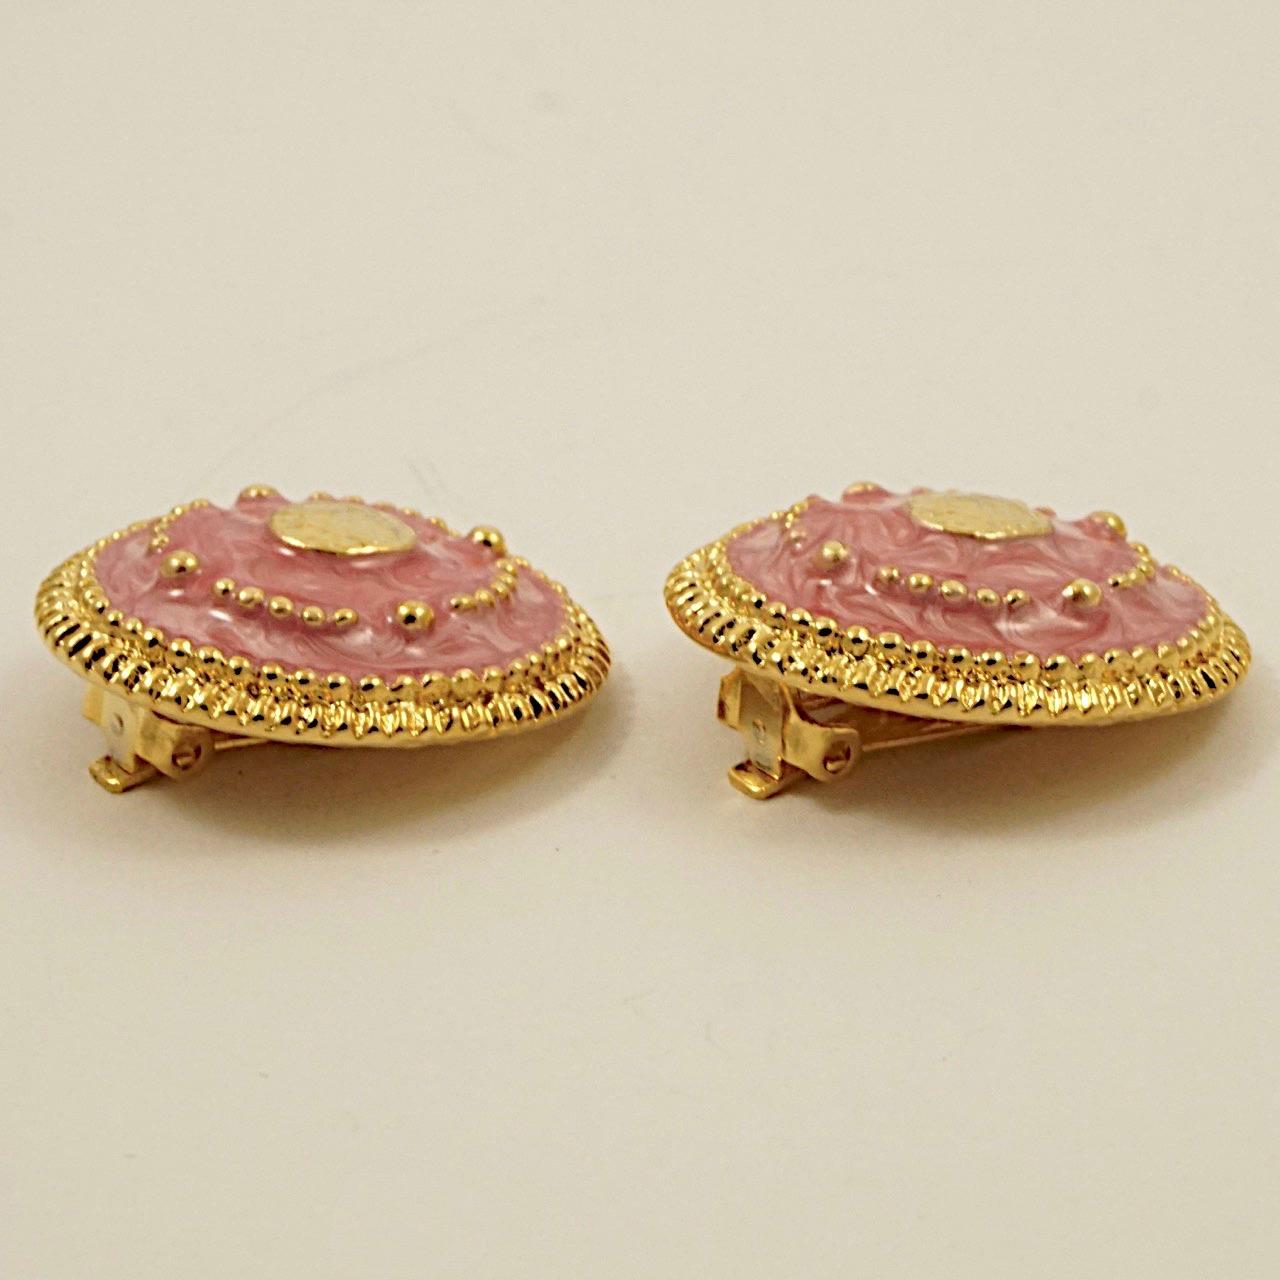 Vergoldete Clip-Ohrringe, verziert mit rosa Emaille und goldenen Kuppeln. Sie sind in sehr gutem Zustand, wie neu. Messdurchmesser 3,1 cm / 1,2 Zoll.

Dieses schöne Paar Ohrringe stammt aus den 1980er Jahren.